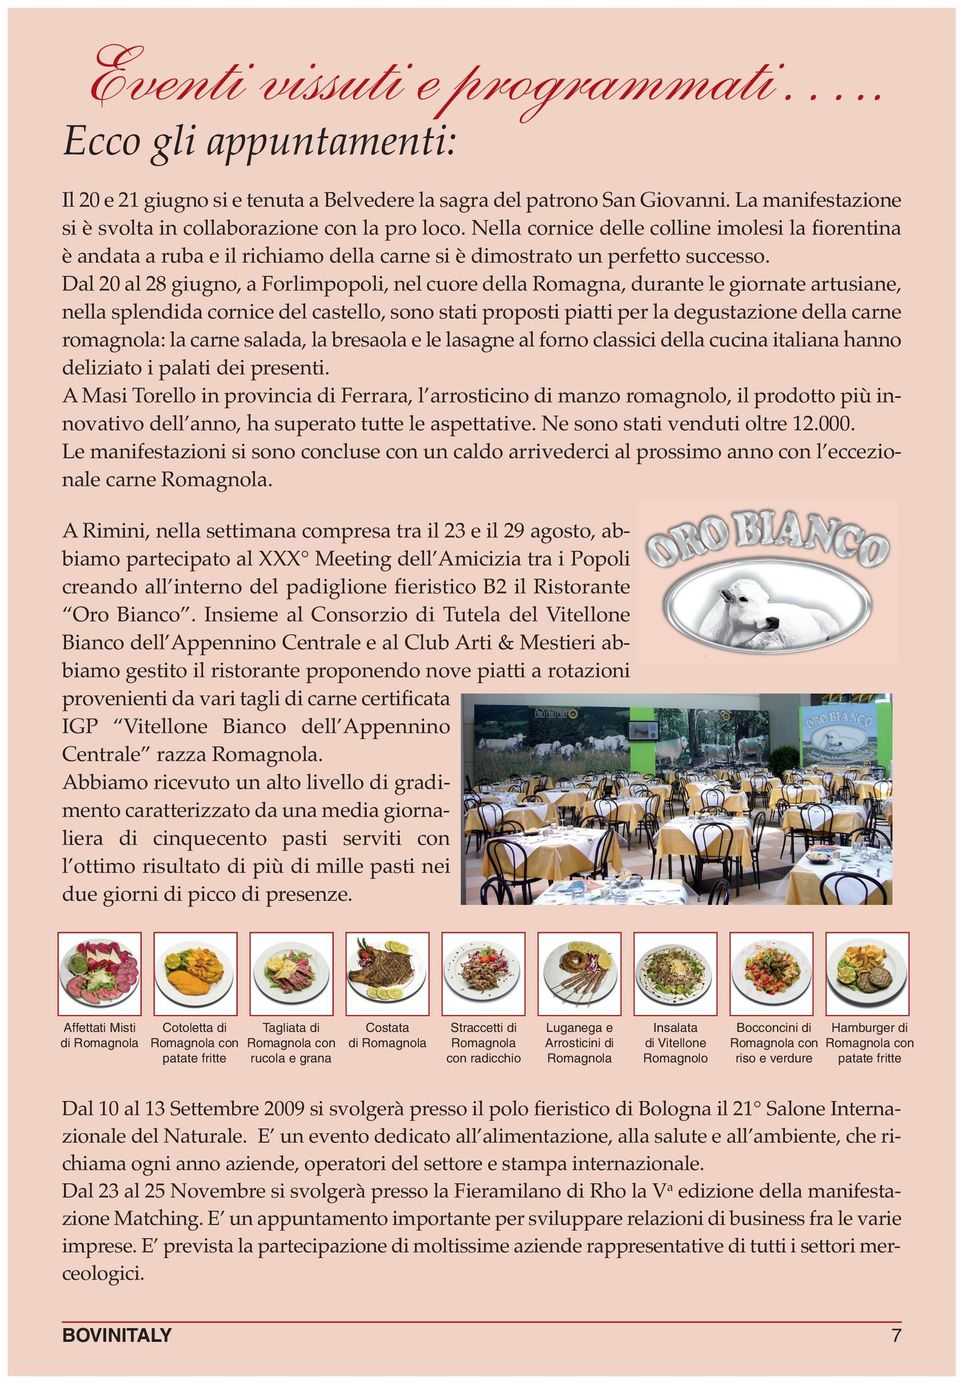 Dal 20 al 28 giugno, a Forlimpopoli, nel cuore della Romagna, durante le giornate artusiane, nella splendida cornice del castello, sono stati proposti piatti per la degustazione della carne